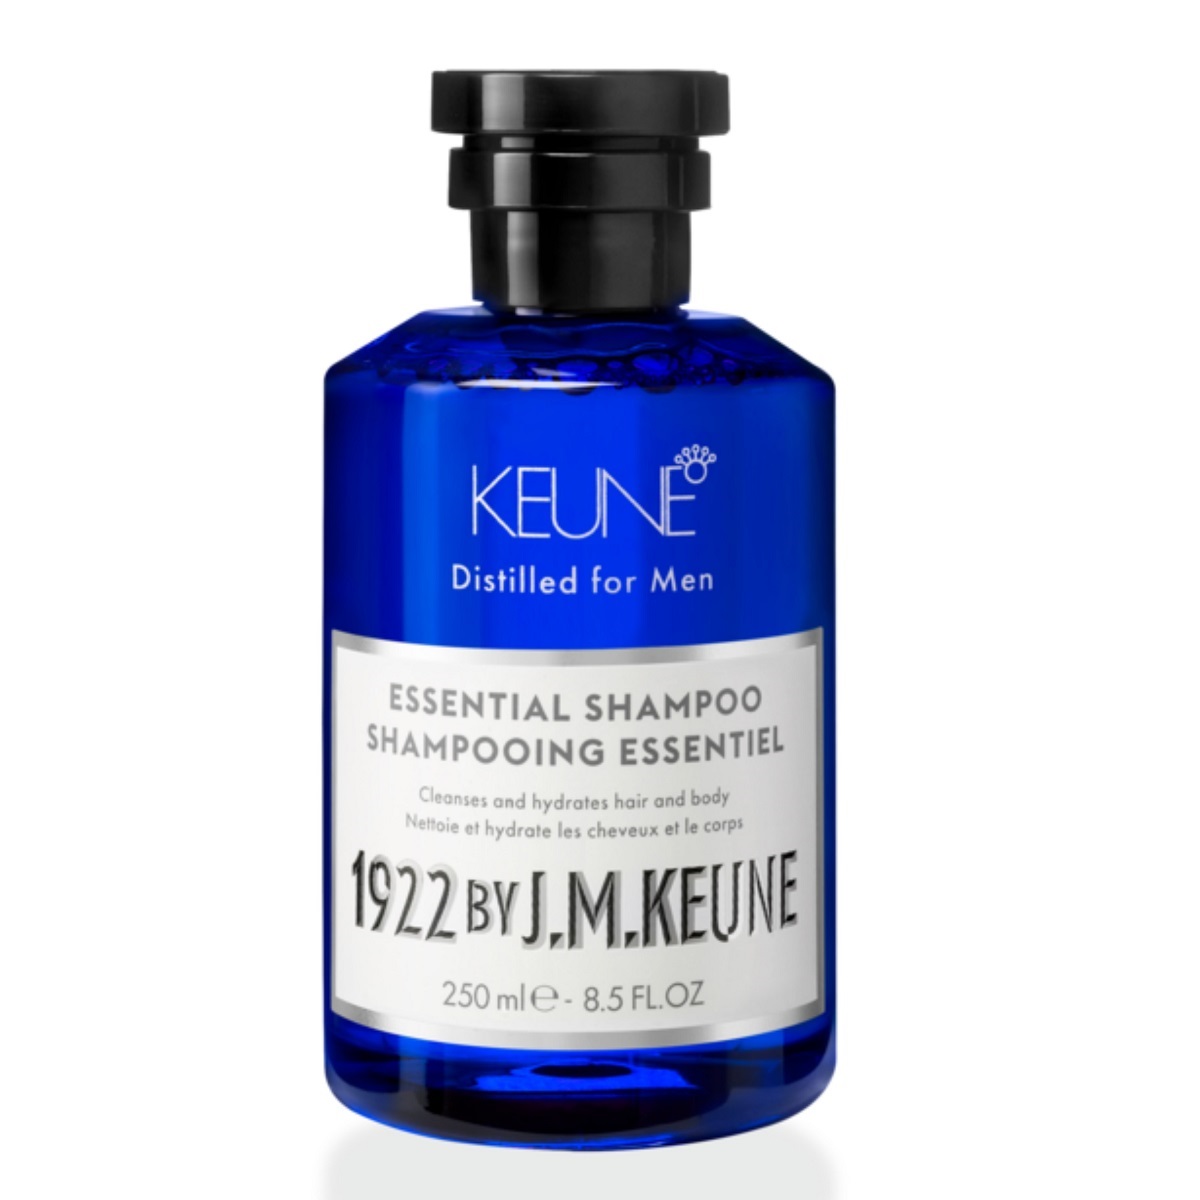 Keune Универсальный шампунь для волос и тела Essential Shampoo, 250 мл (Keune, 1922 by J.M. Keune) универсальный шампунь для волос и тела 1922 by j m keune essential shampoo шампунь 250мл